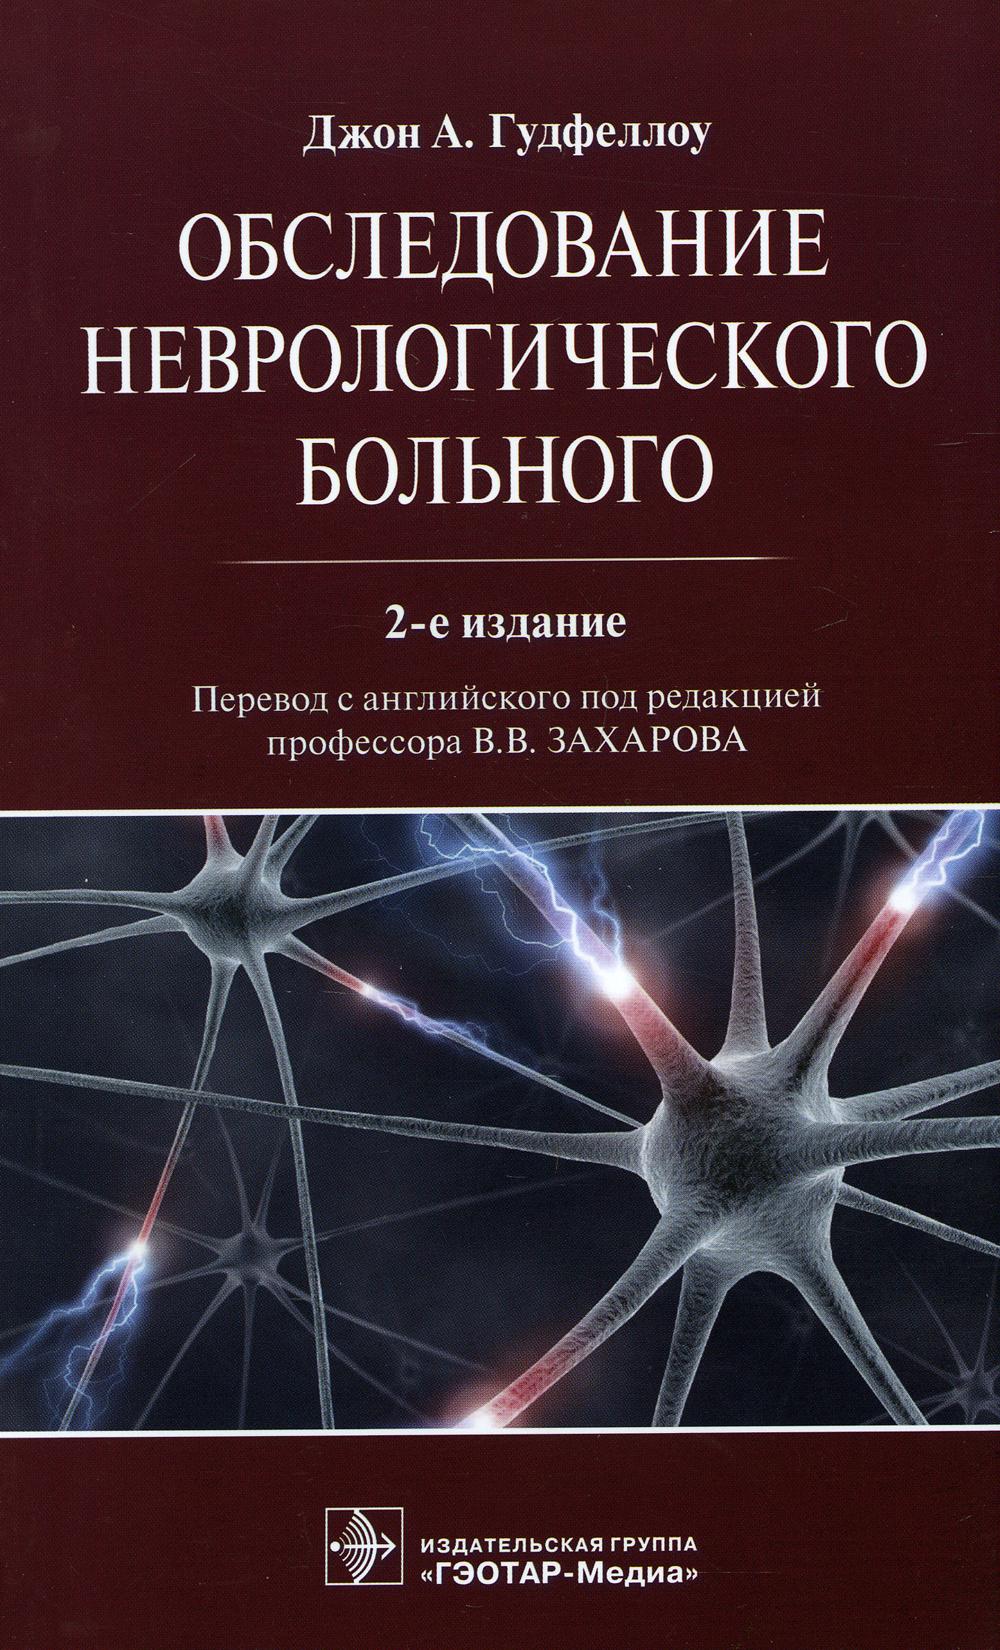 фото Книга обследование неврологического больного. 2-е изд гэотар-медиа